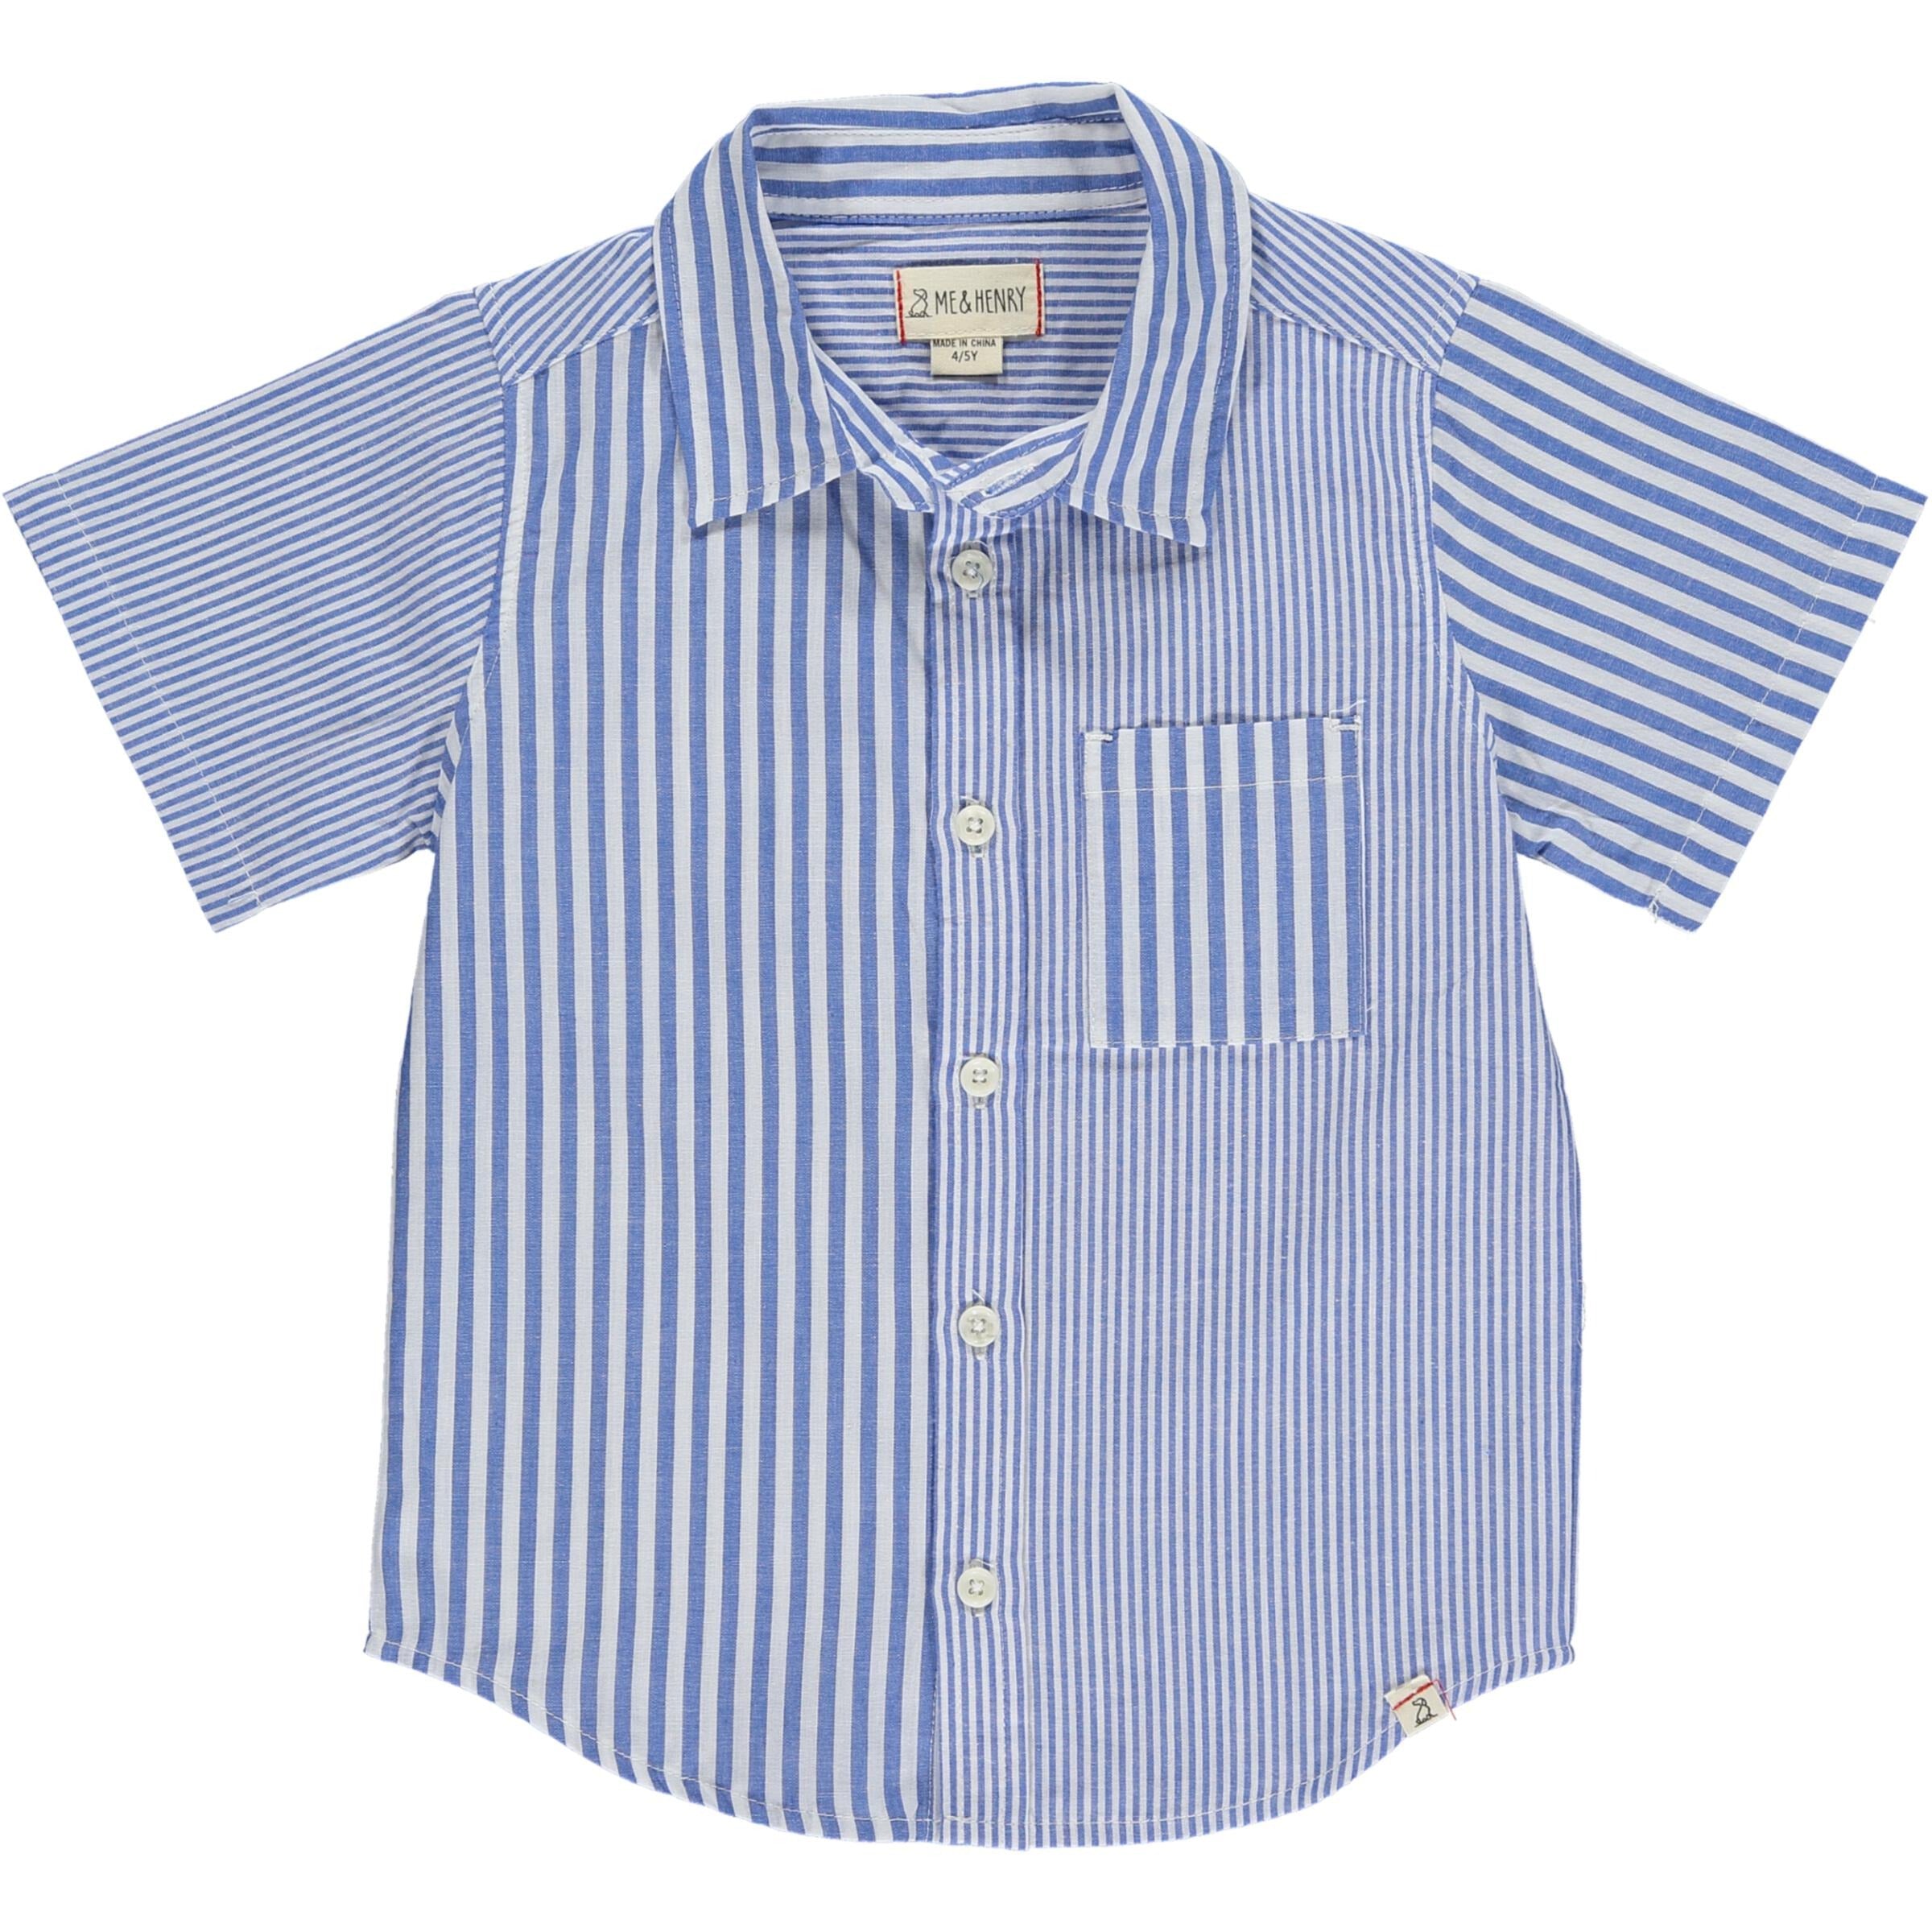 Arthur Shirt - Blue/White Multi Stripe